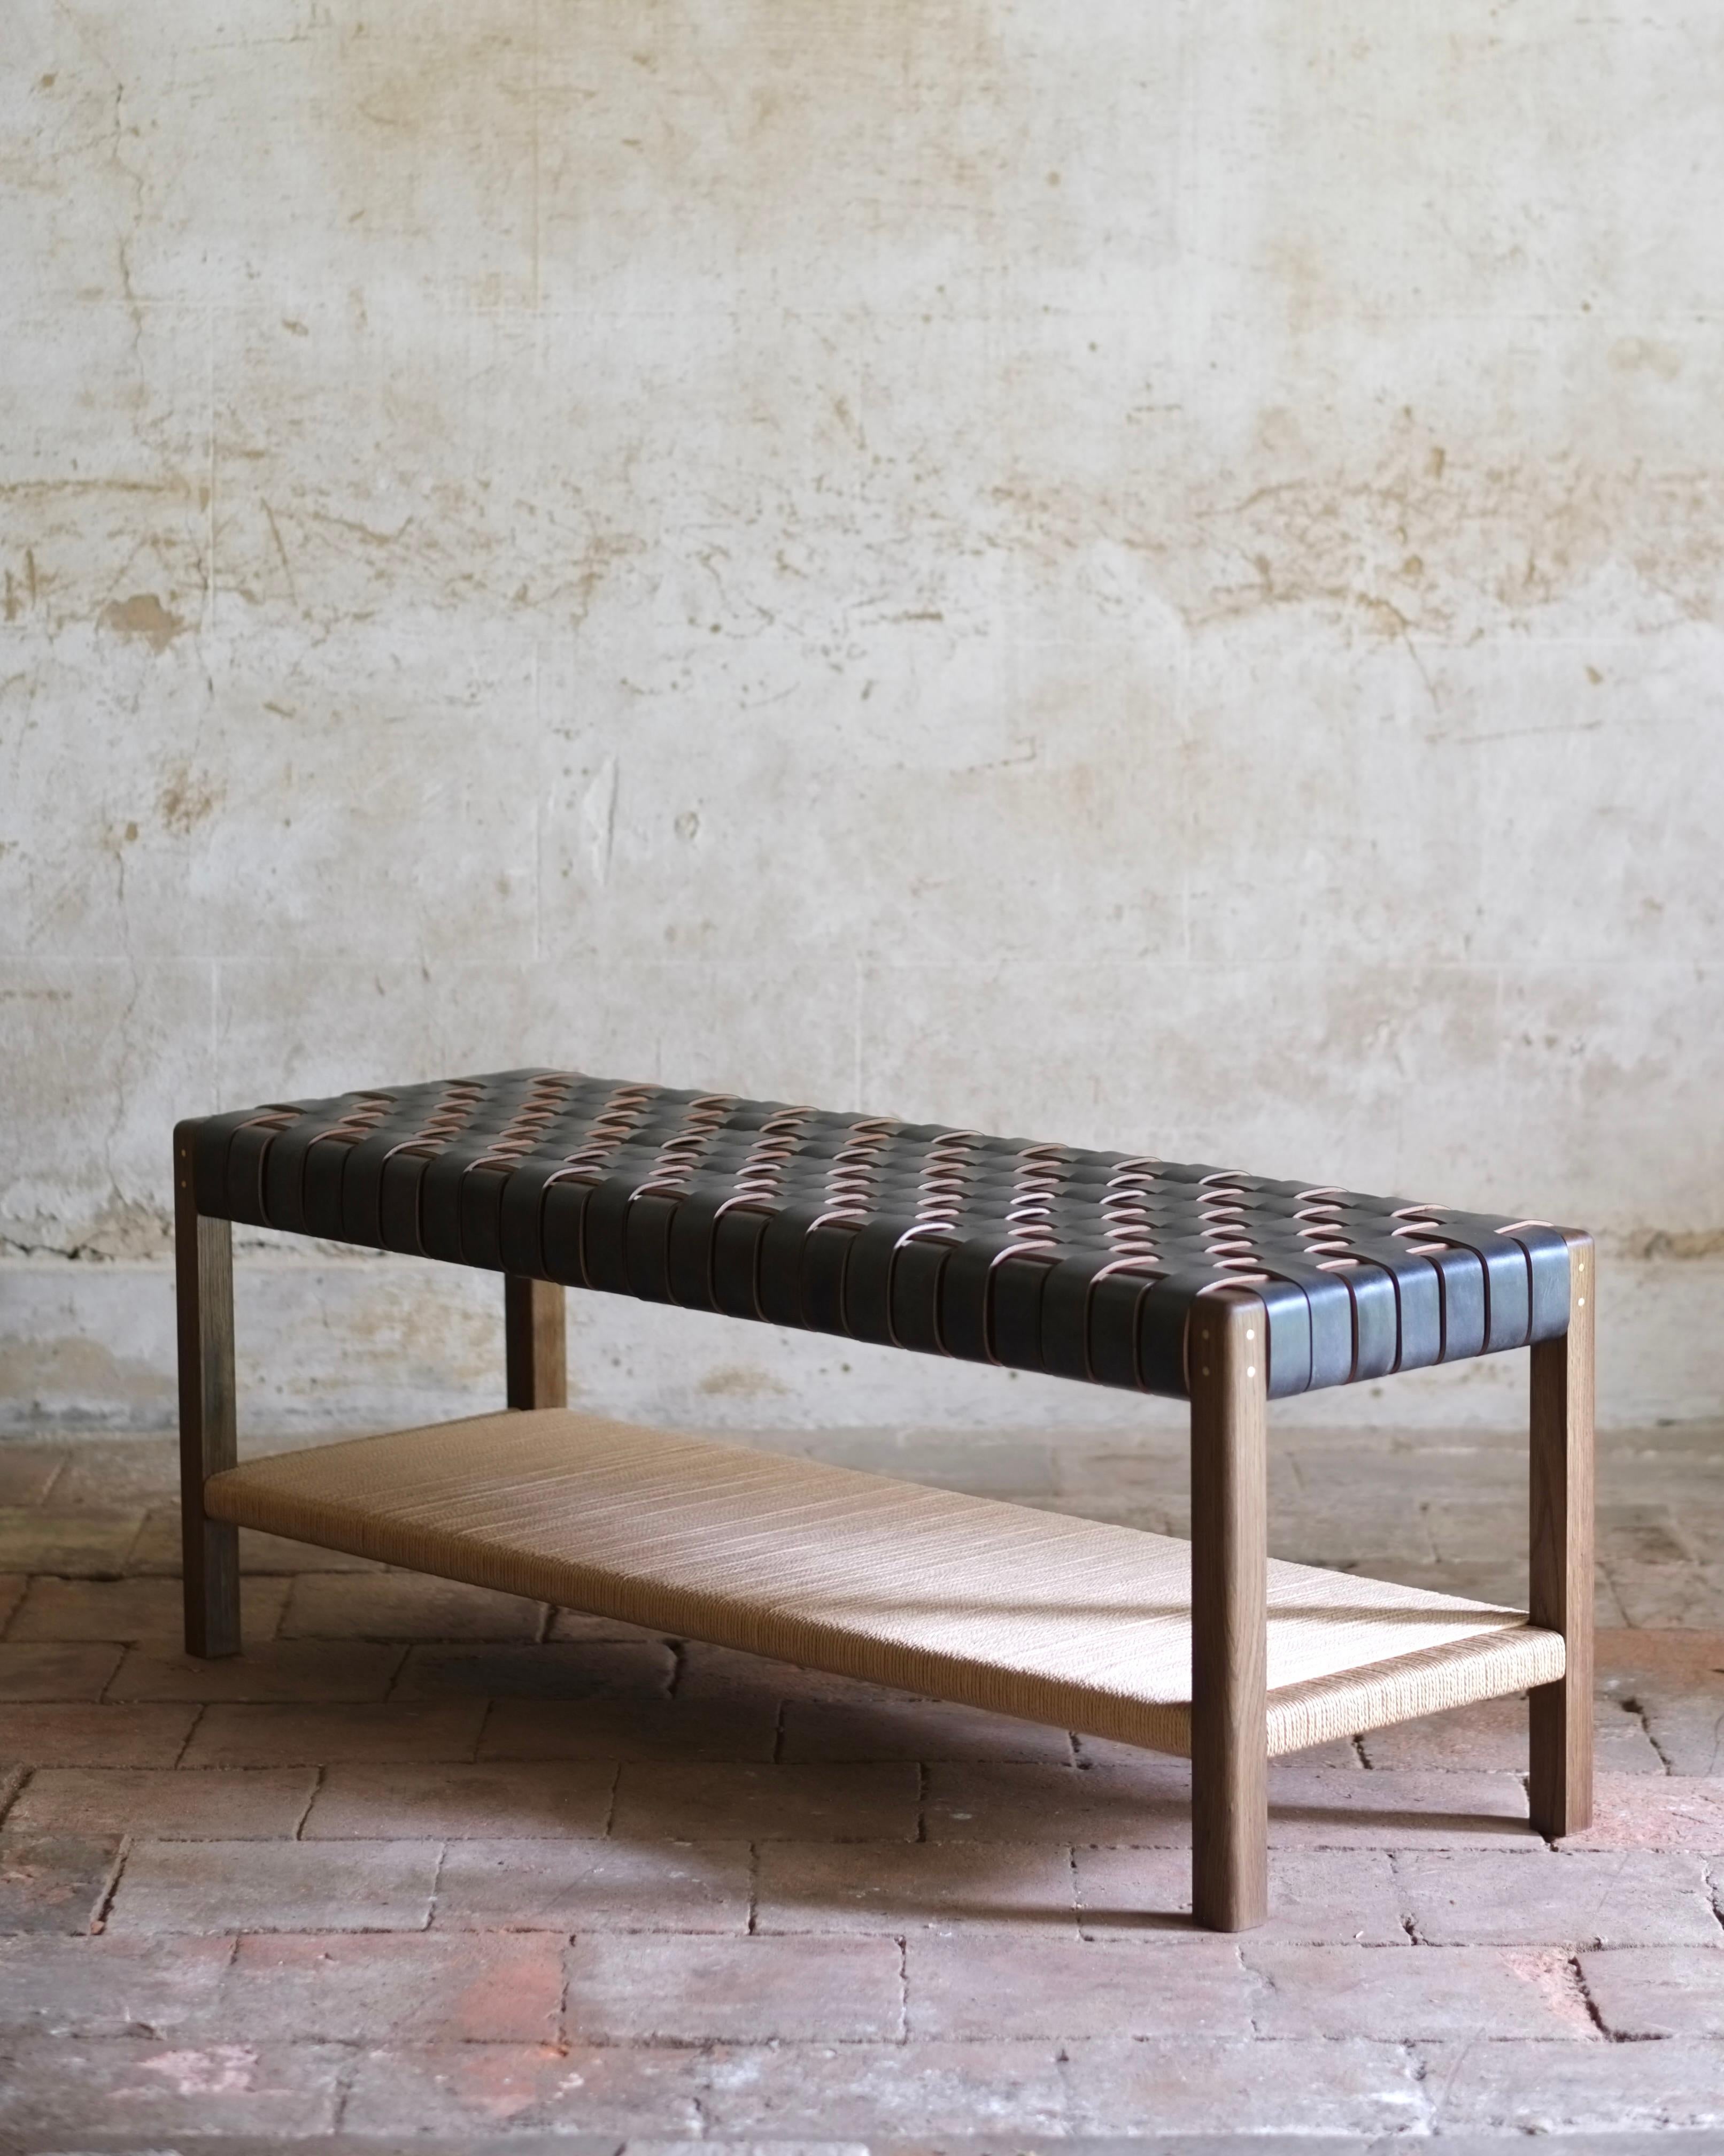 Inspiré par le minimalisme utilitaire et intemporel de la tradition Shaker, le banc Cinch associe la menuiserie traditionnelle en bois et les techniques classiques de travail du cuir. Les pieds façonnés et les joints à tenon sont associés à un cuir